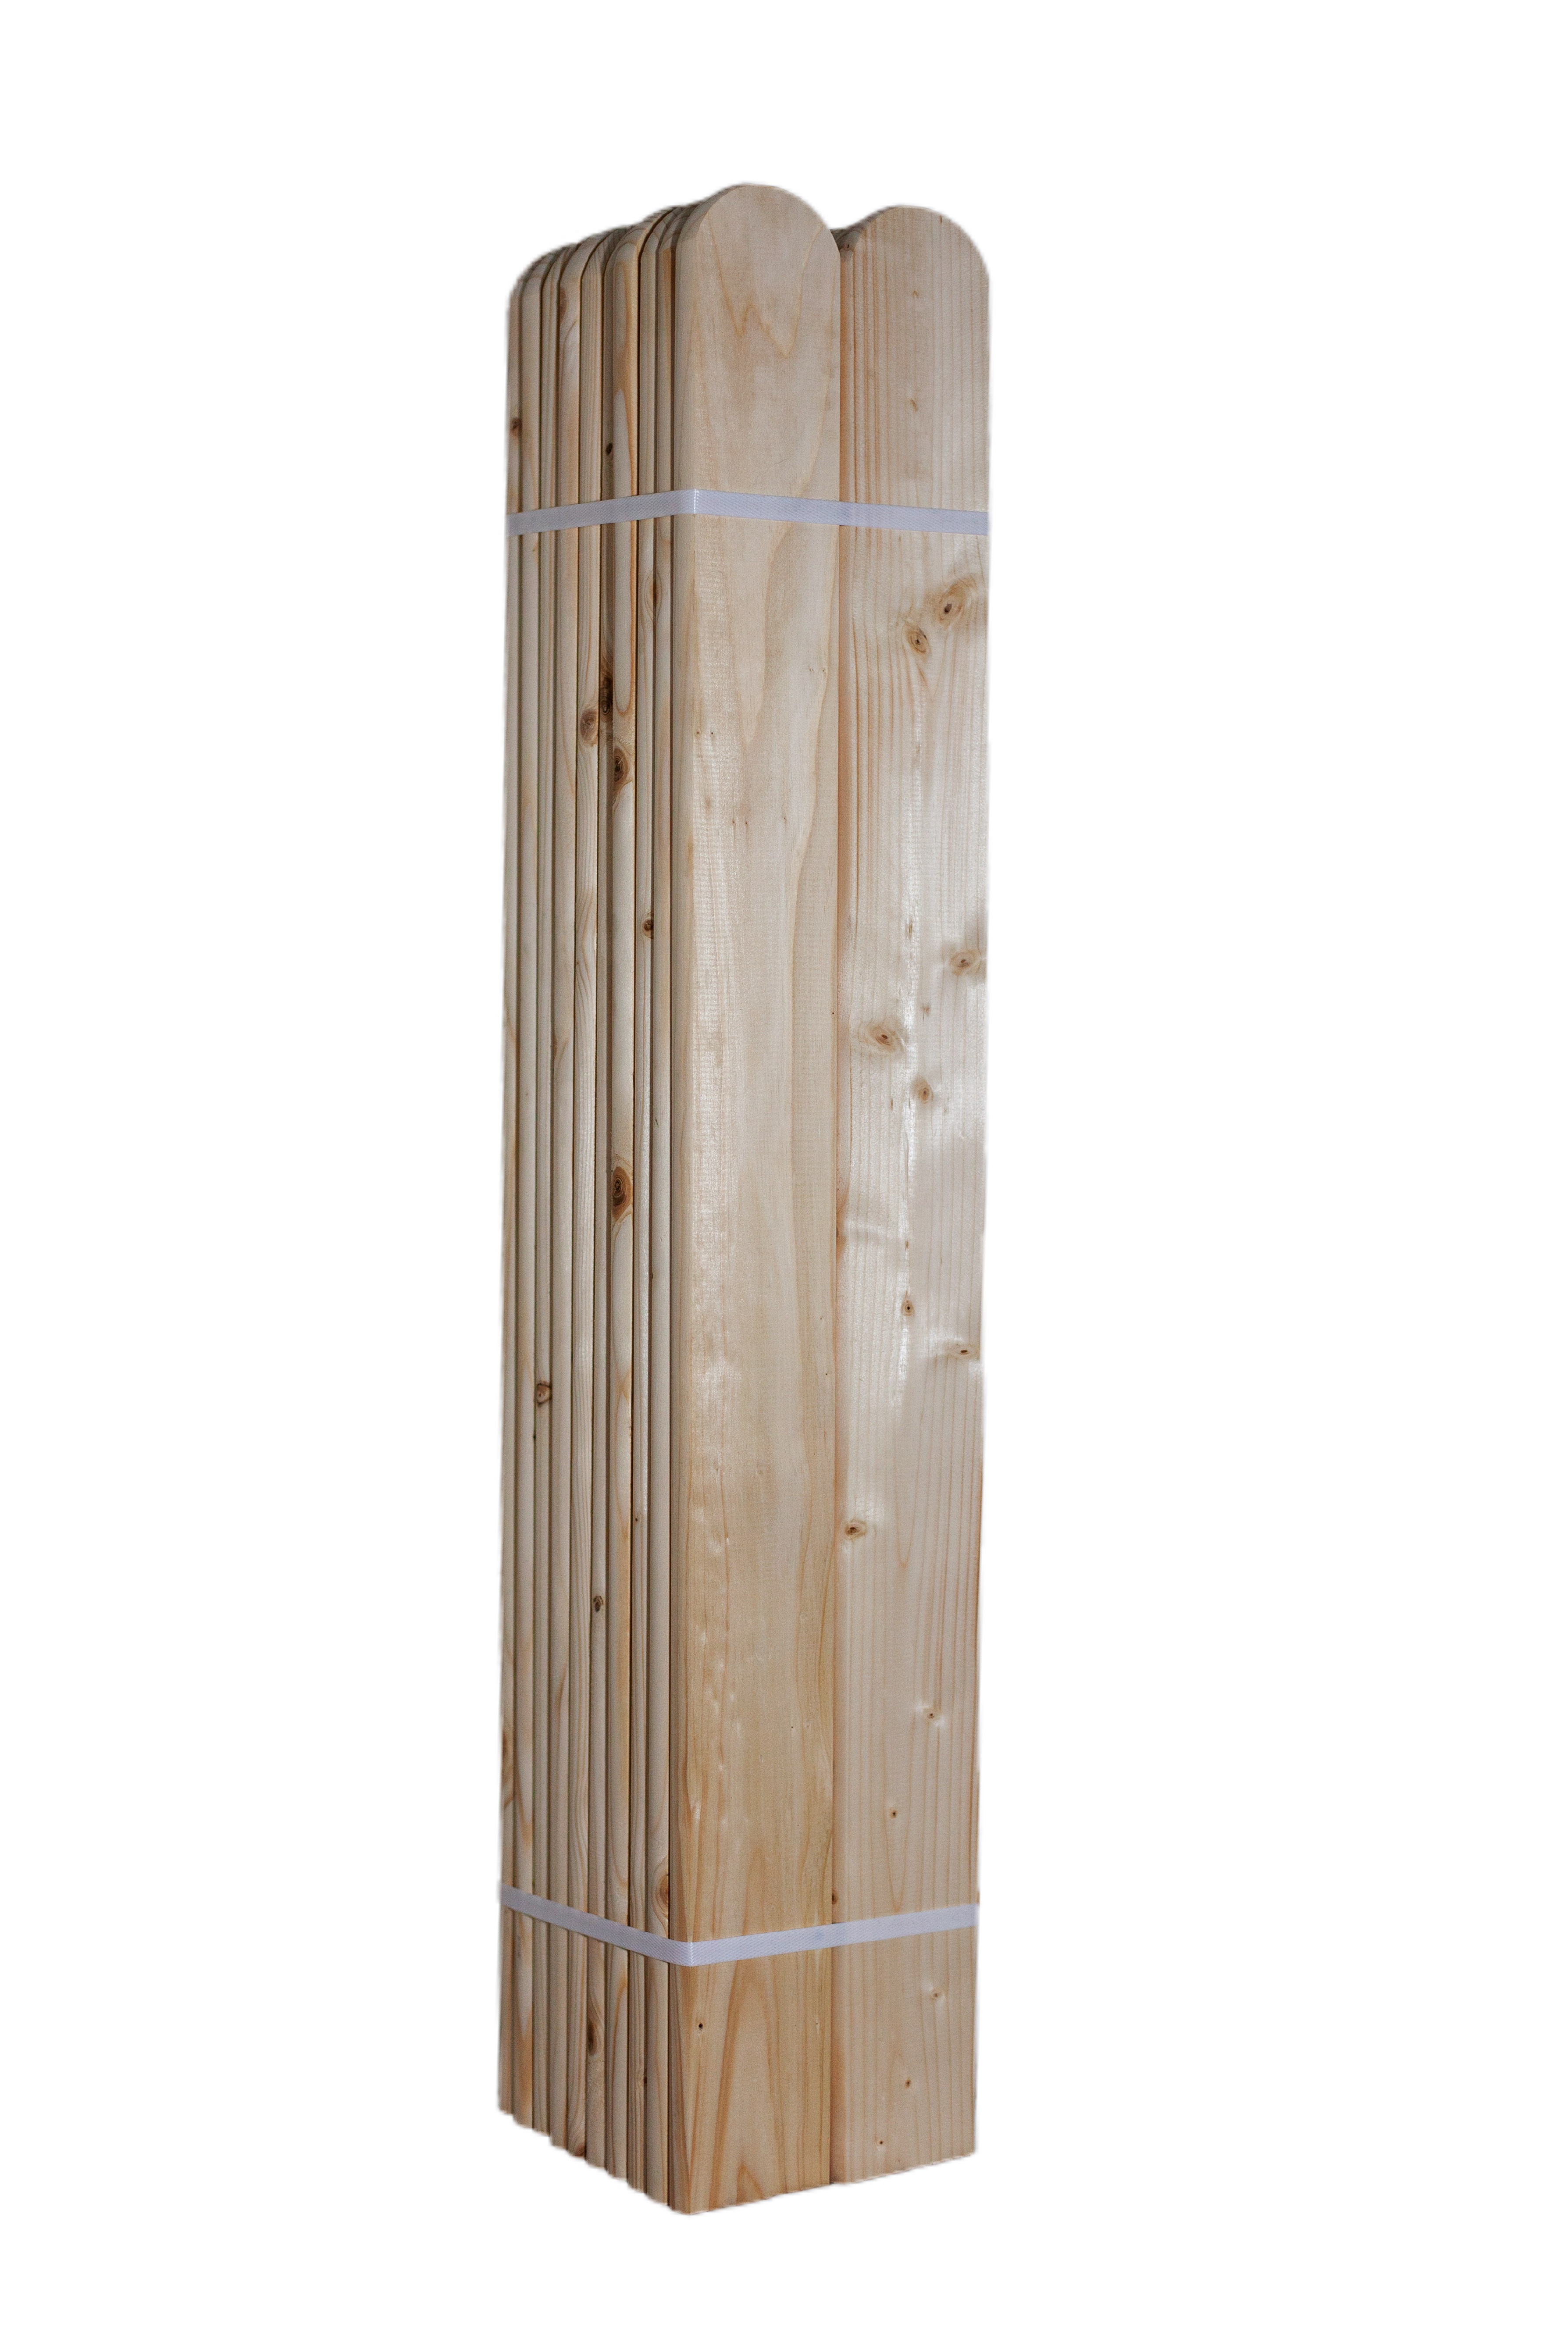 LC Dřevěná smrková plotovka, 20 x 90 mm zakulacená 1ks Výška plotovek: 50 cm